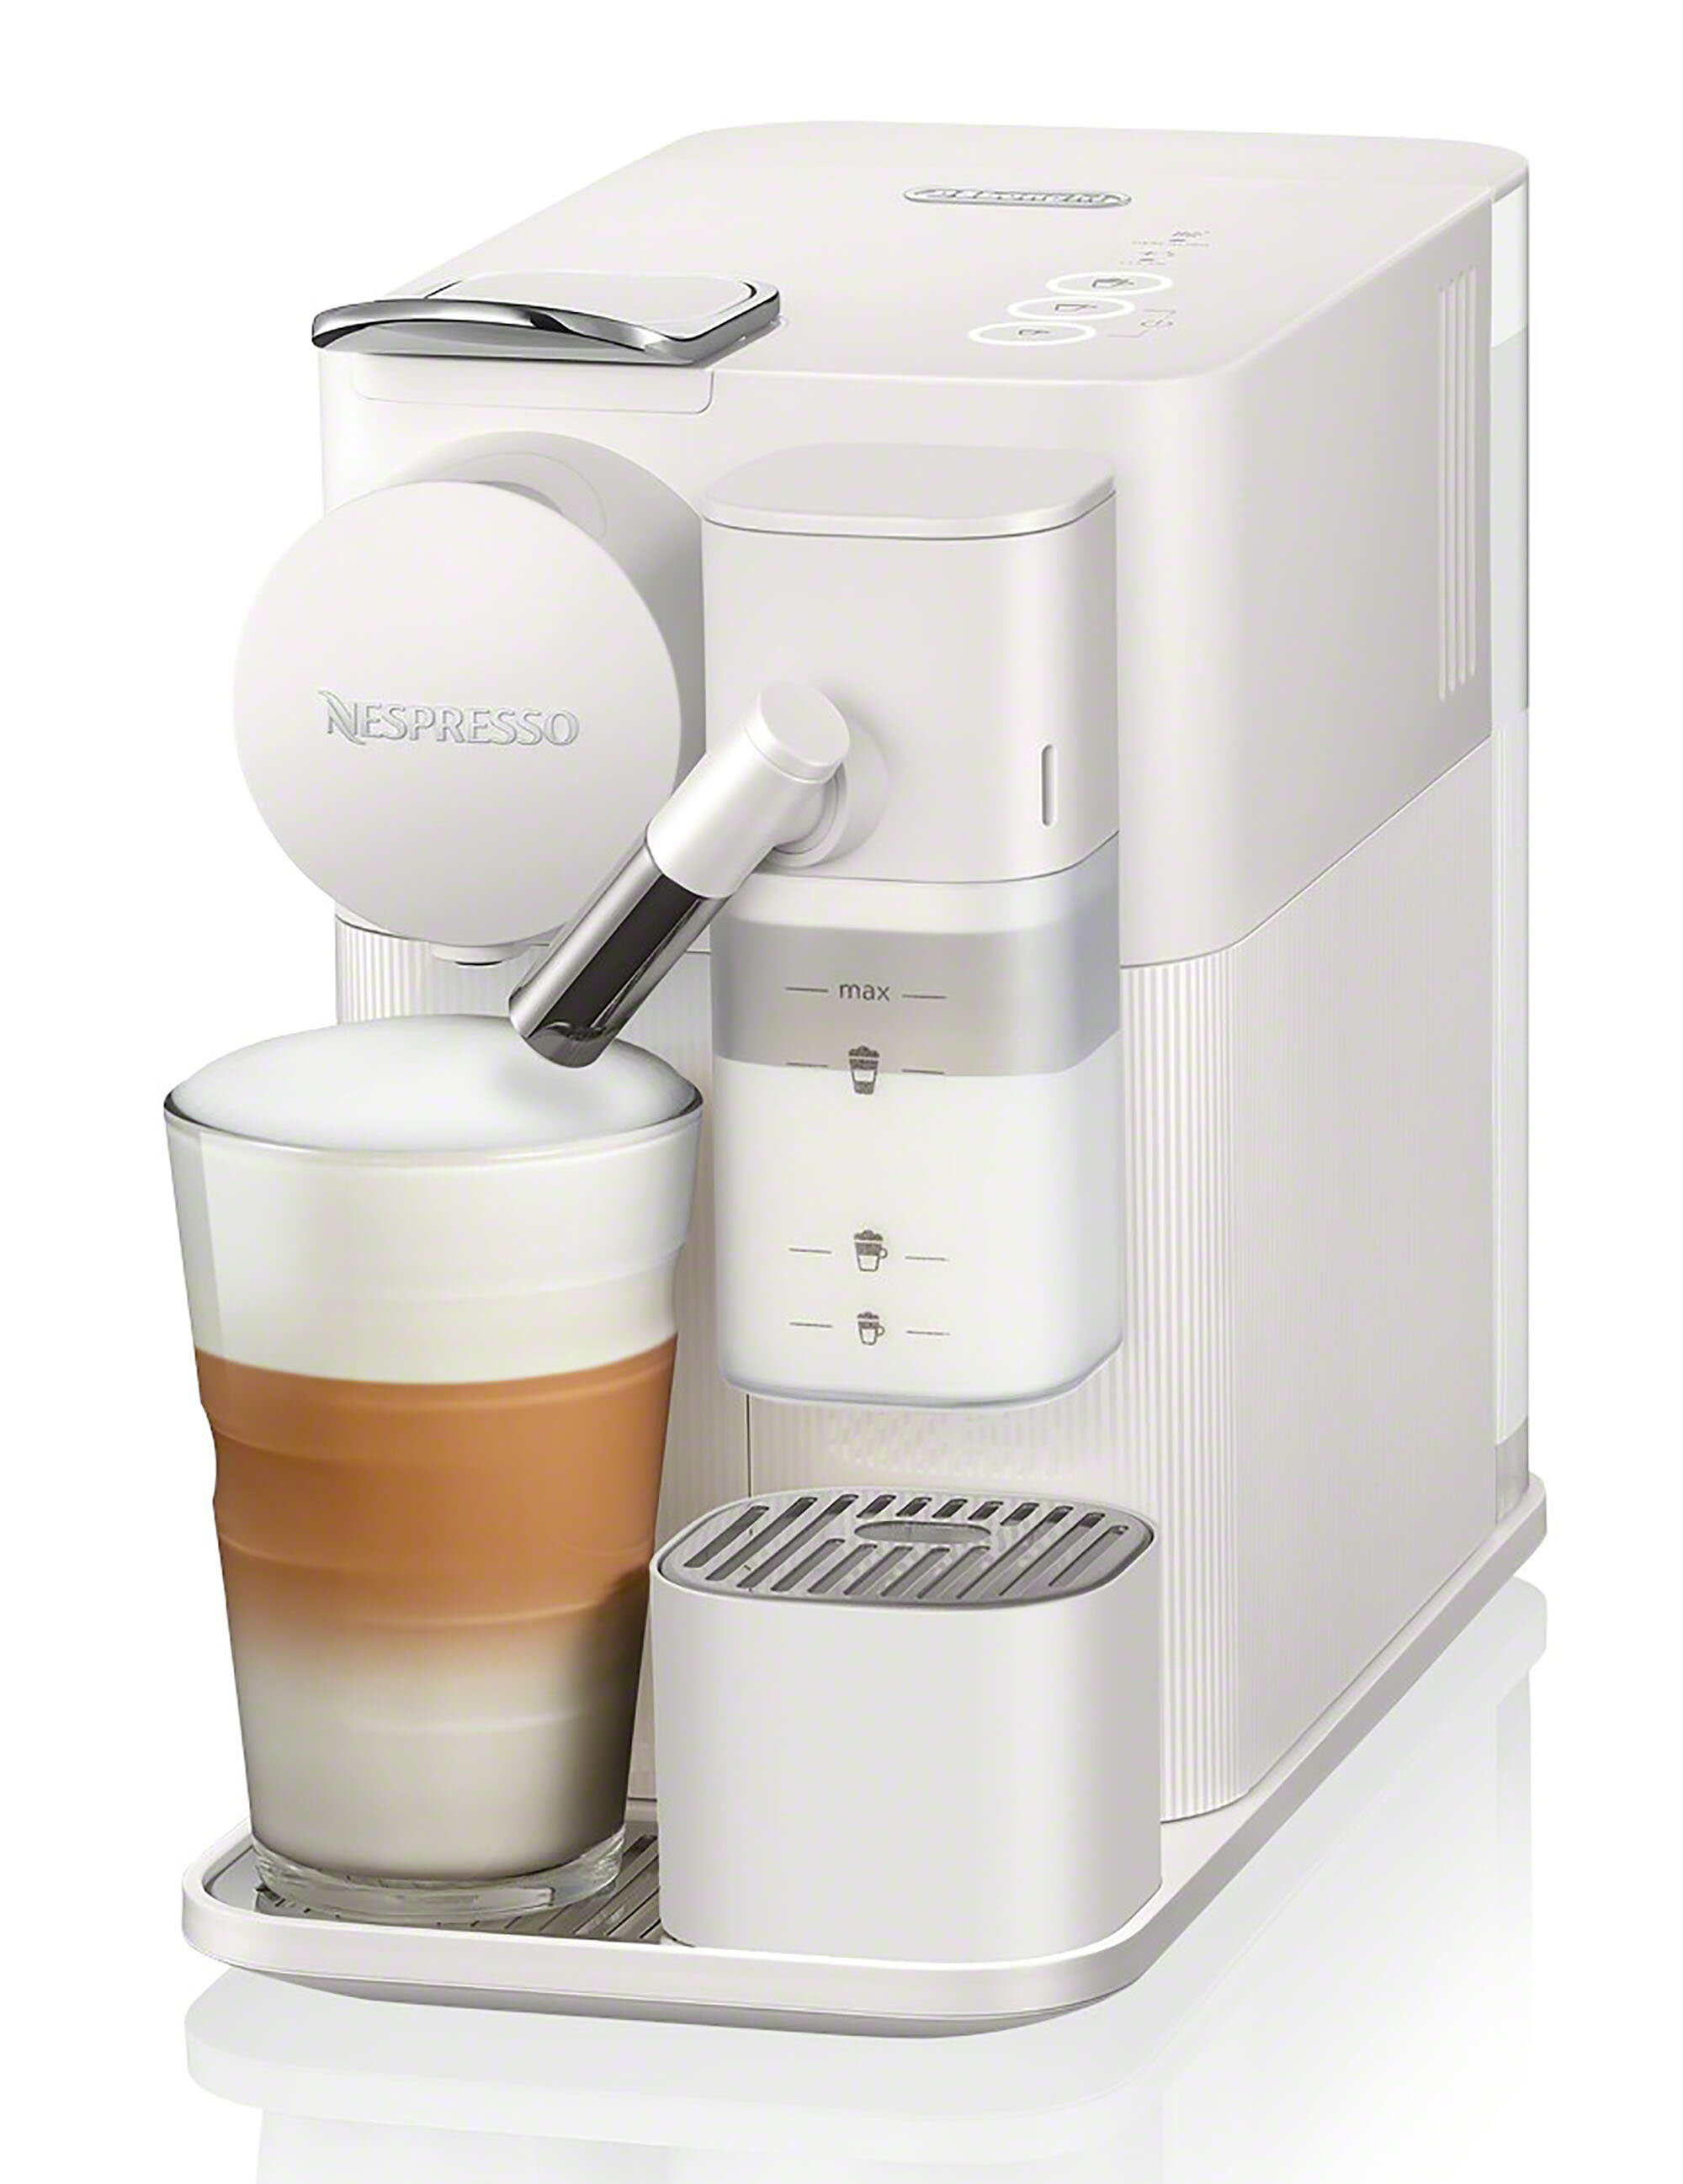 https://assets.wfcdn.com/im/69294291/compr-r85/1667/166792282/nespresso-lattissima-one-original-espresso-machine-with-milk-frother.jpg